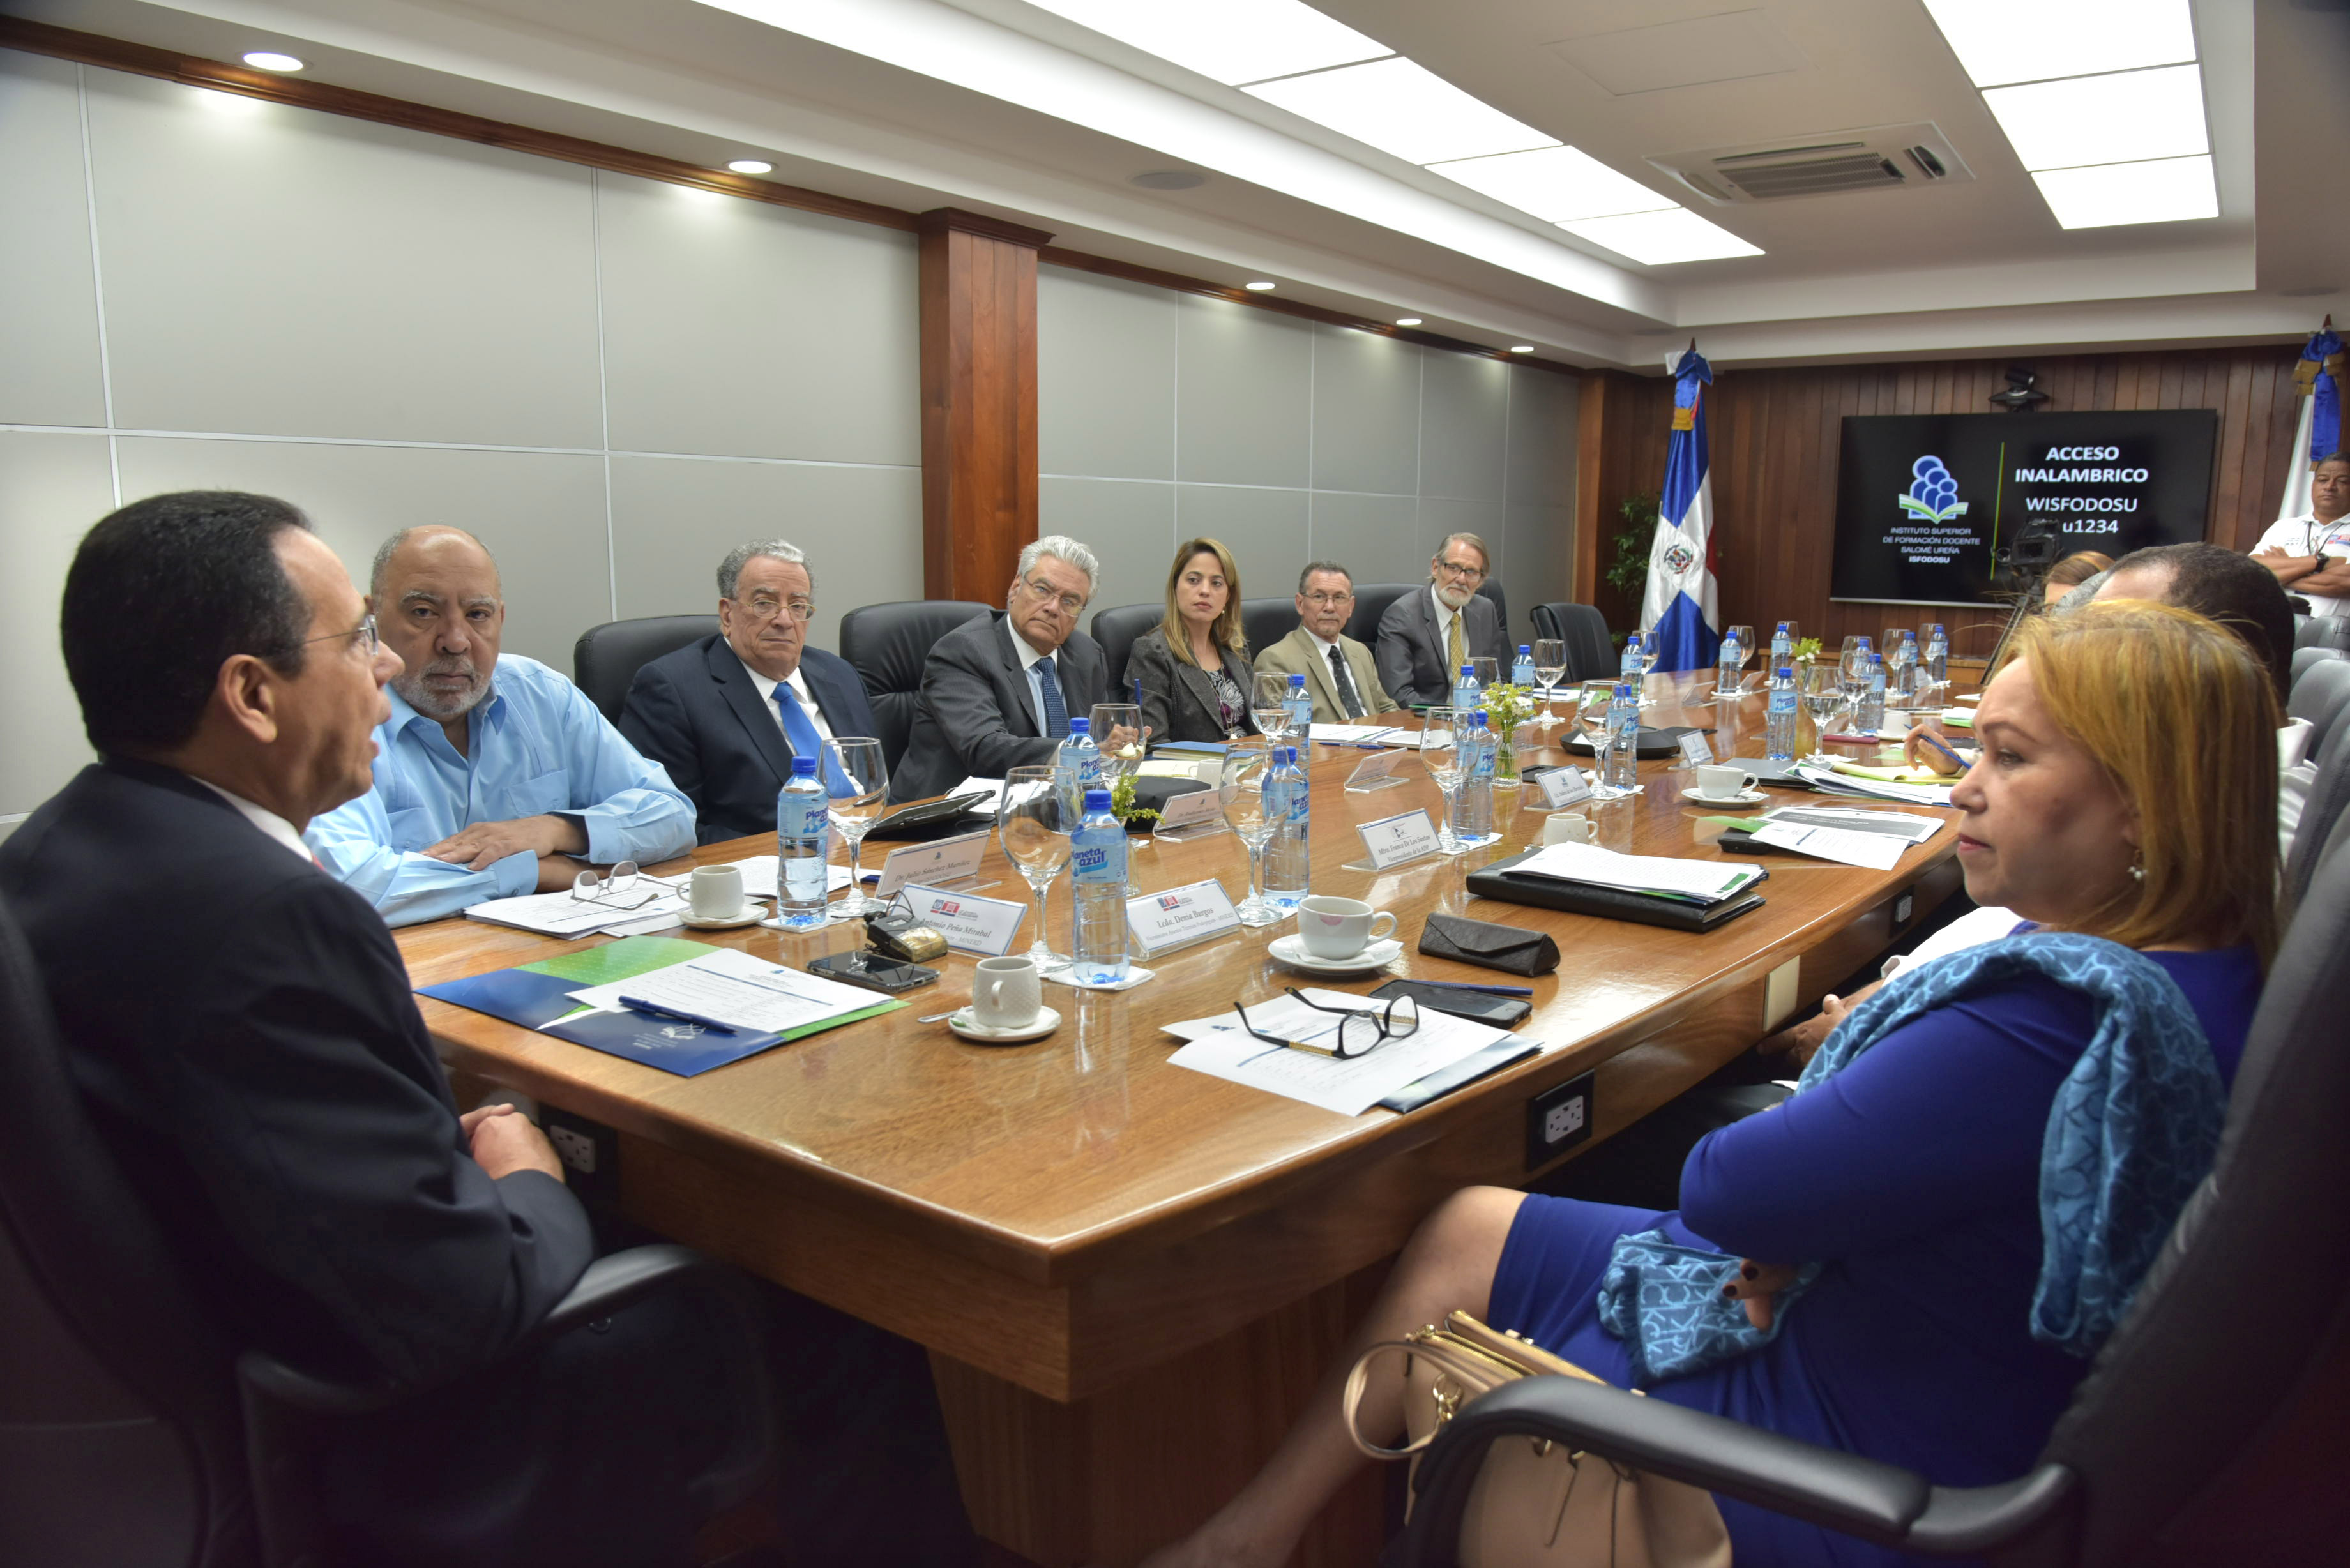  imagen Ministro Antonio Peña Mirabal sentado en reunión con consejo directivo del ISFODOSU 